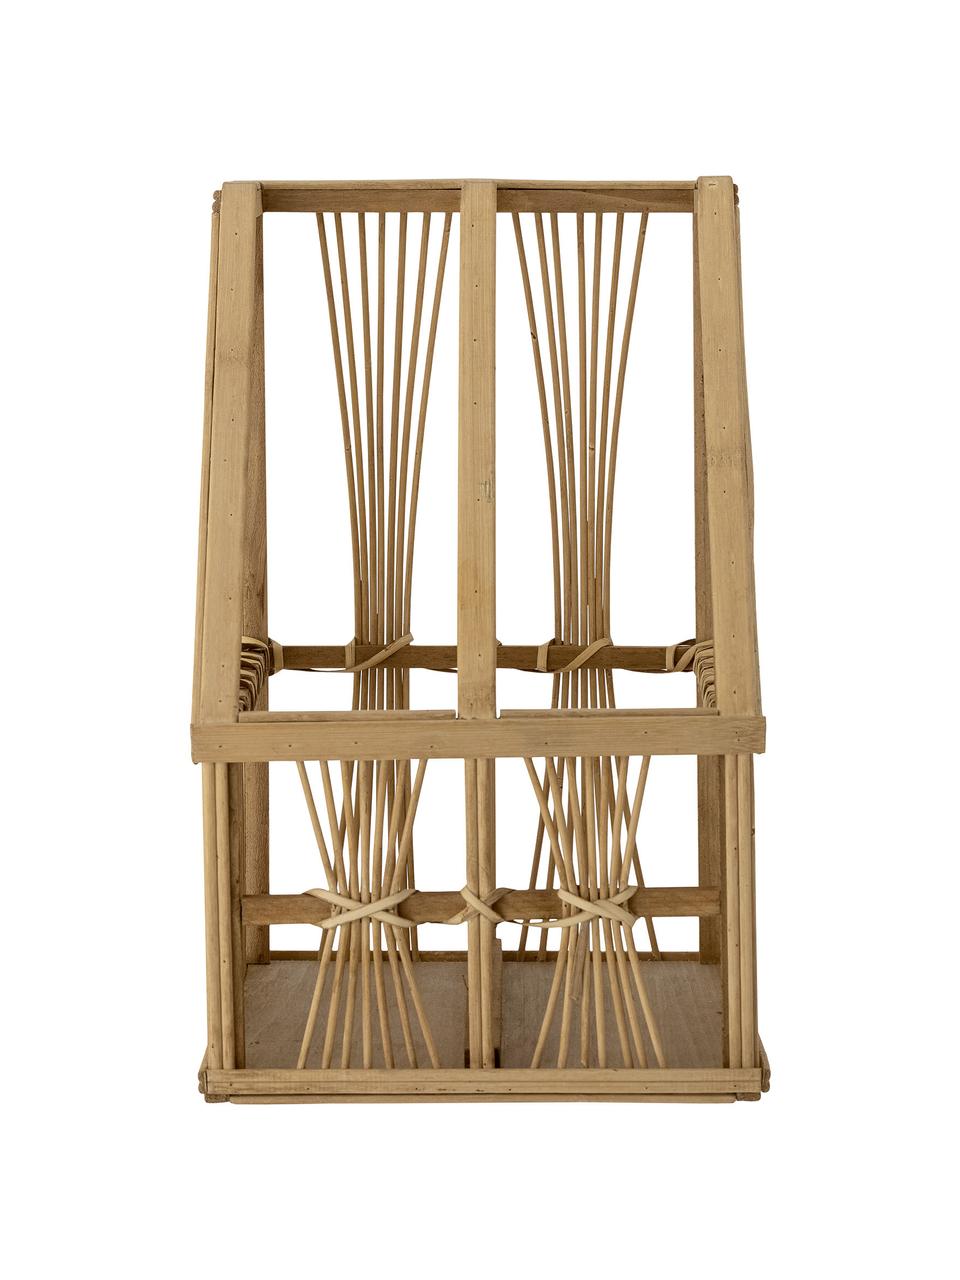 Stojak na czasopisma z drewna bambusowego i rattanu Tobi, Drewno bambusowe, rattan, drewno jodłowe, sklejka, Brązowy, S 21 x W 34 cm